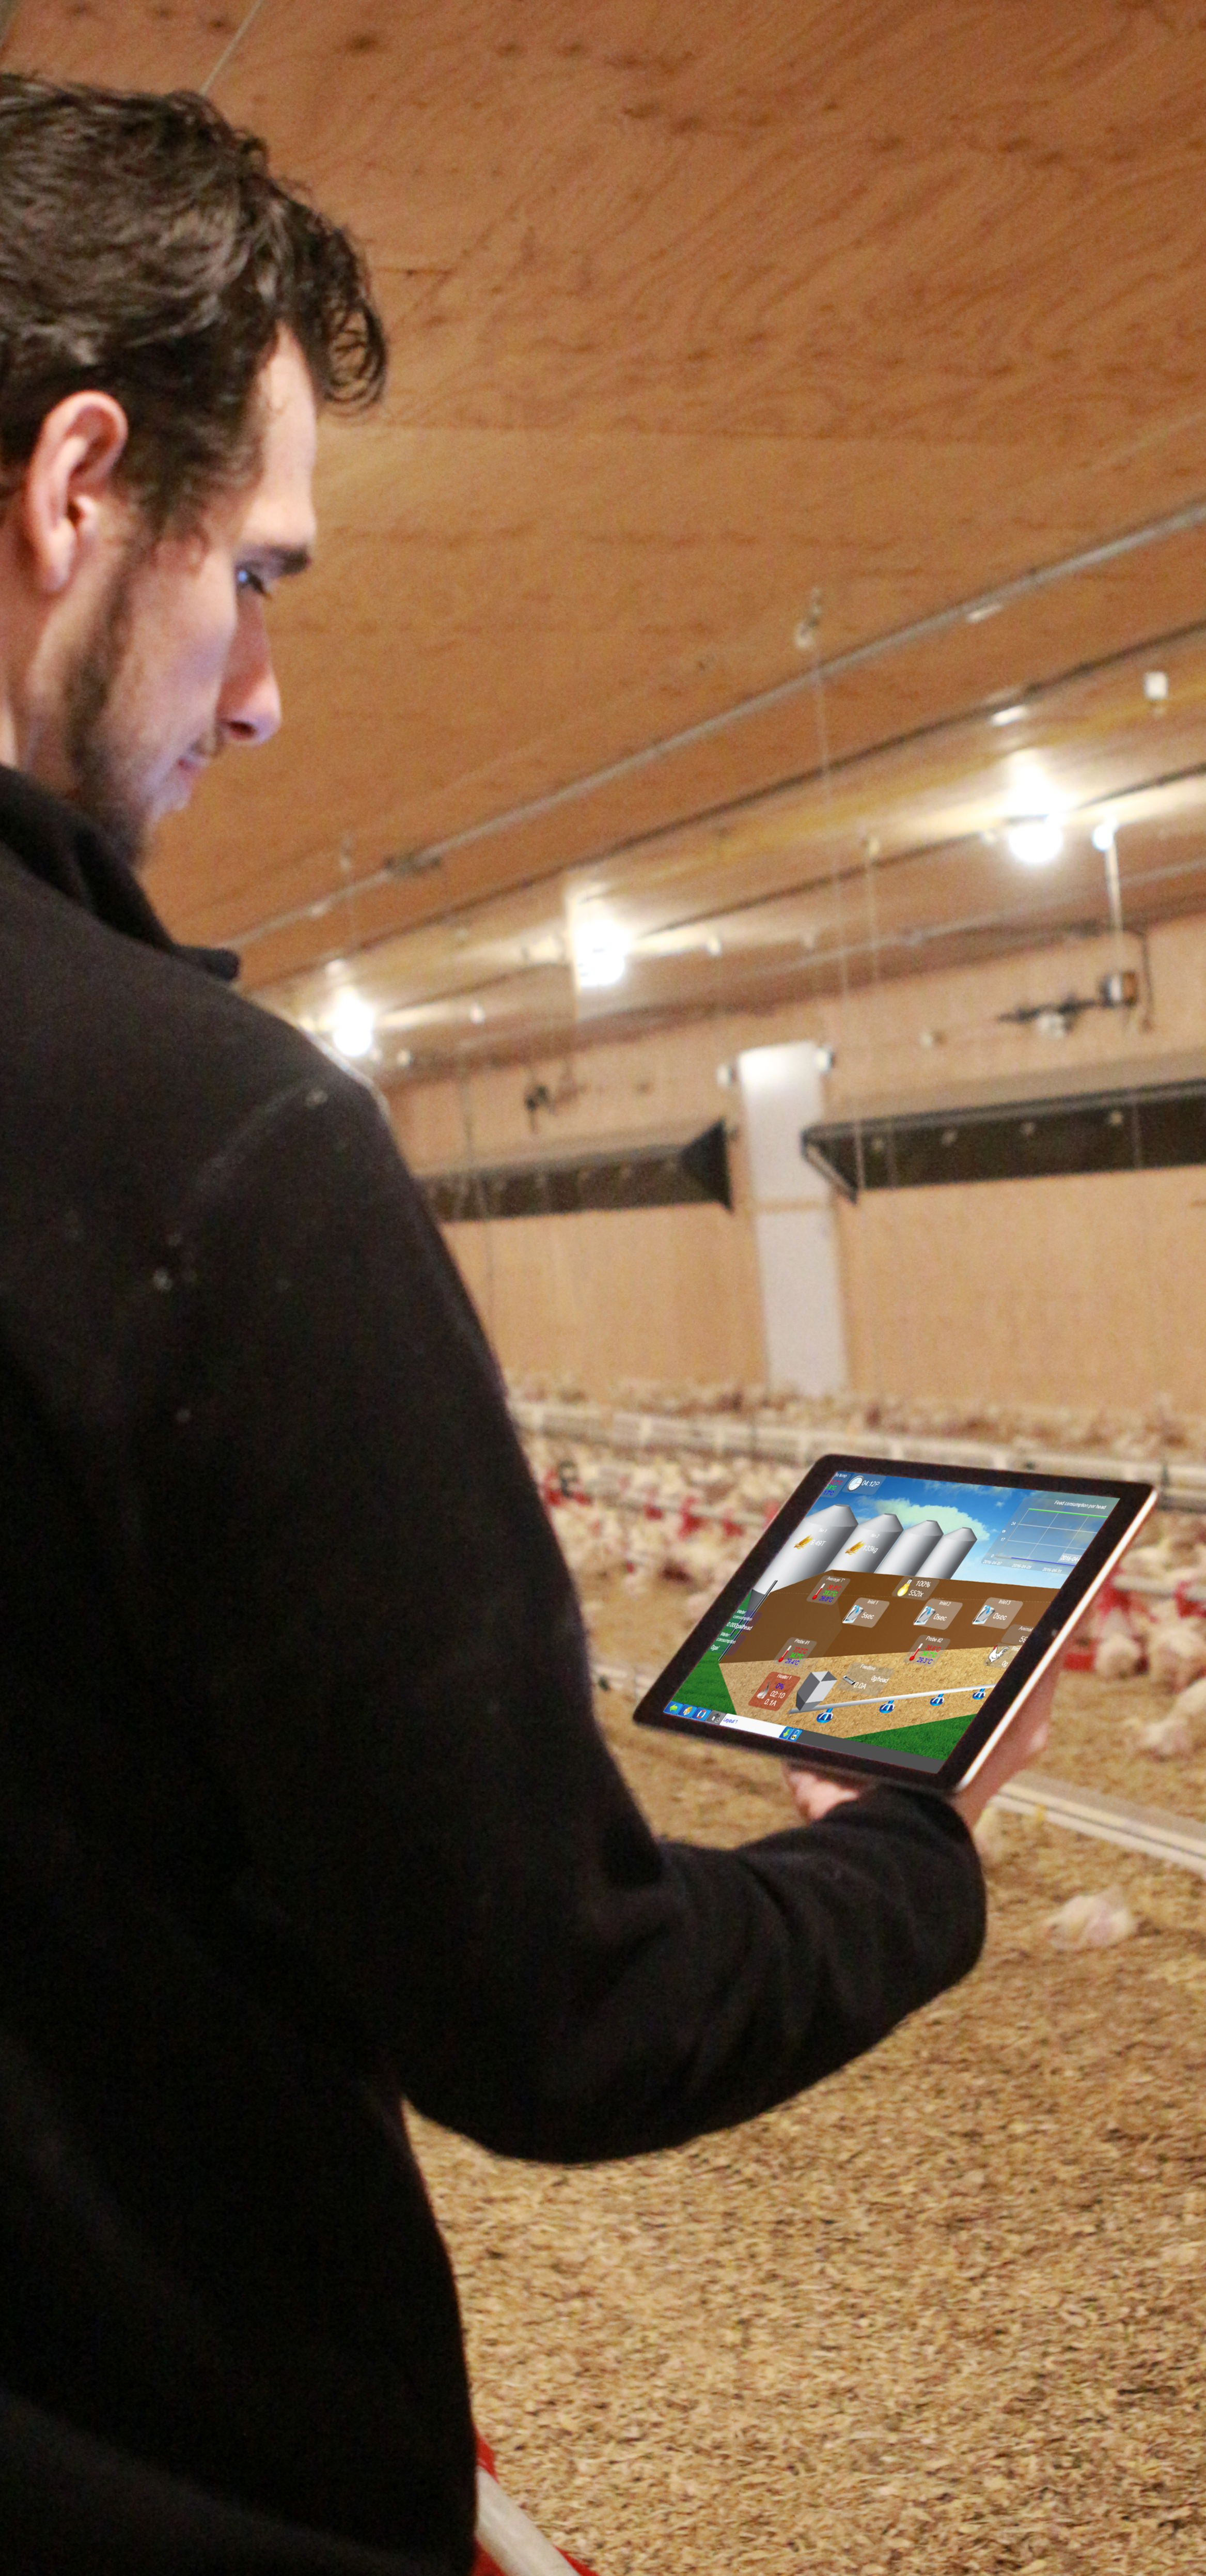 Sistema de gestión de granjas - Visión general de la granja MAXIMUS en iPad